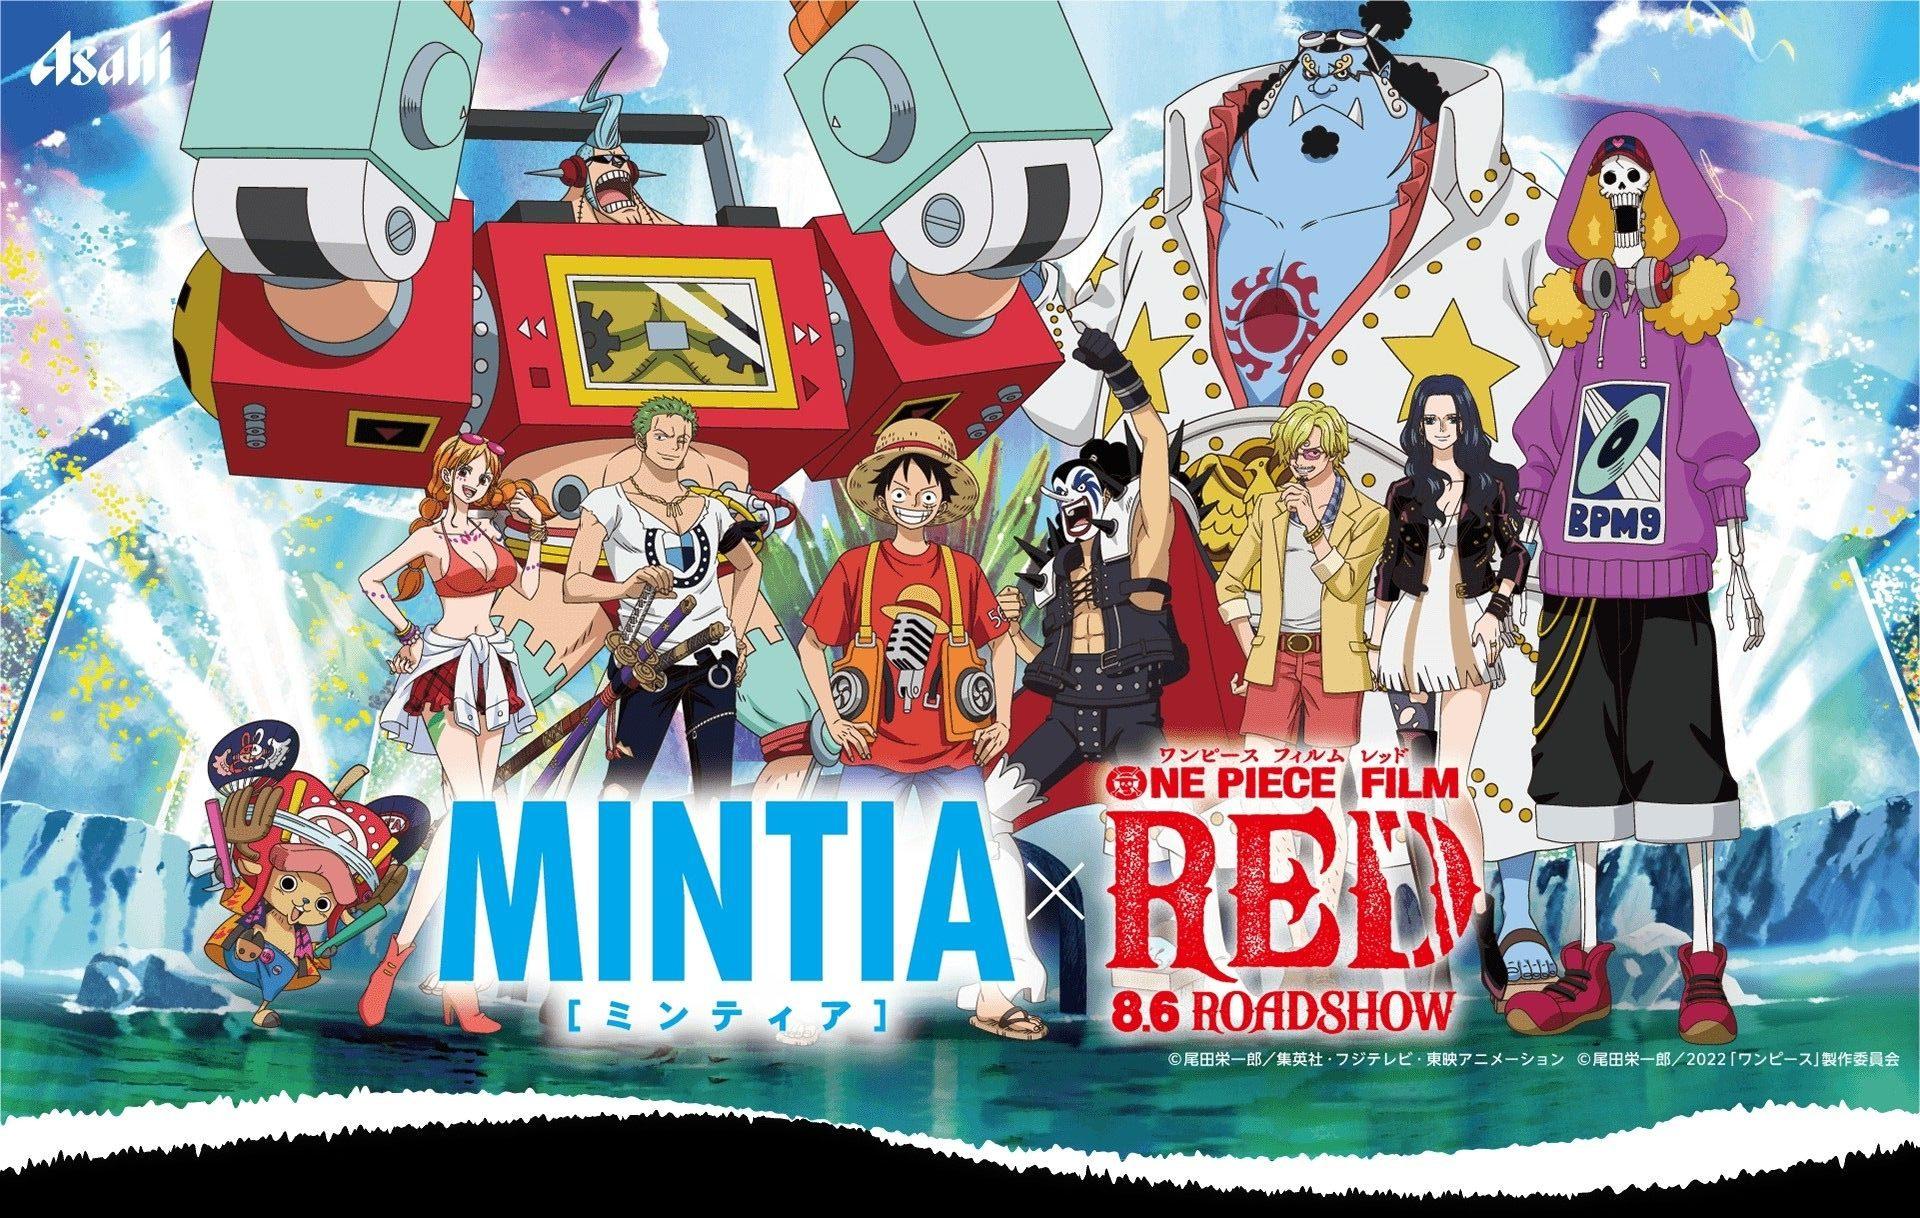 One Piece Film Red - Với những fan của anime One Piece, không thể bỏ lỡ bộ phim mới nhất của họ, One Piece Film Red. Cùng đồng hành cùng Luffy và băng hải tặc trong chuyến phiêu lưu đầy kịch tính và hấp dẫn. Xem ngay để khám phá những bất ngờ và điều mới mẻ trong bộ phim đỉnh cao này.